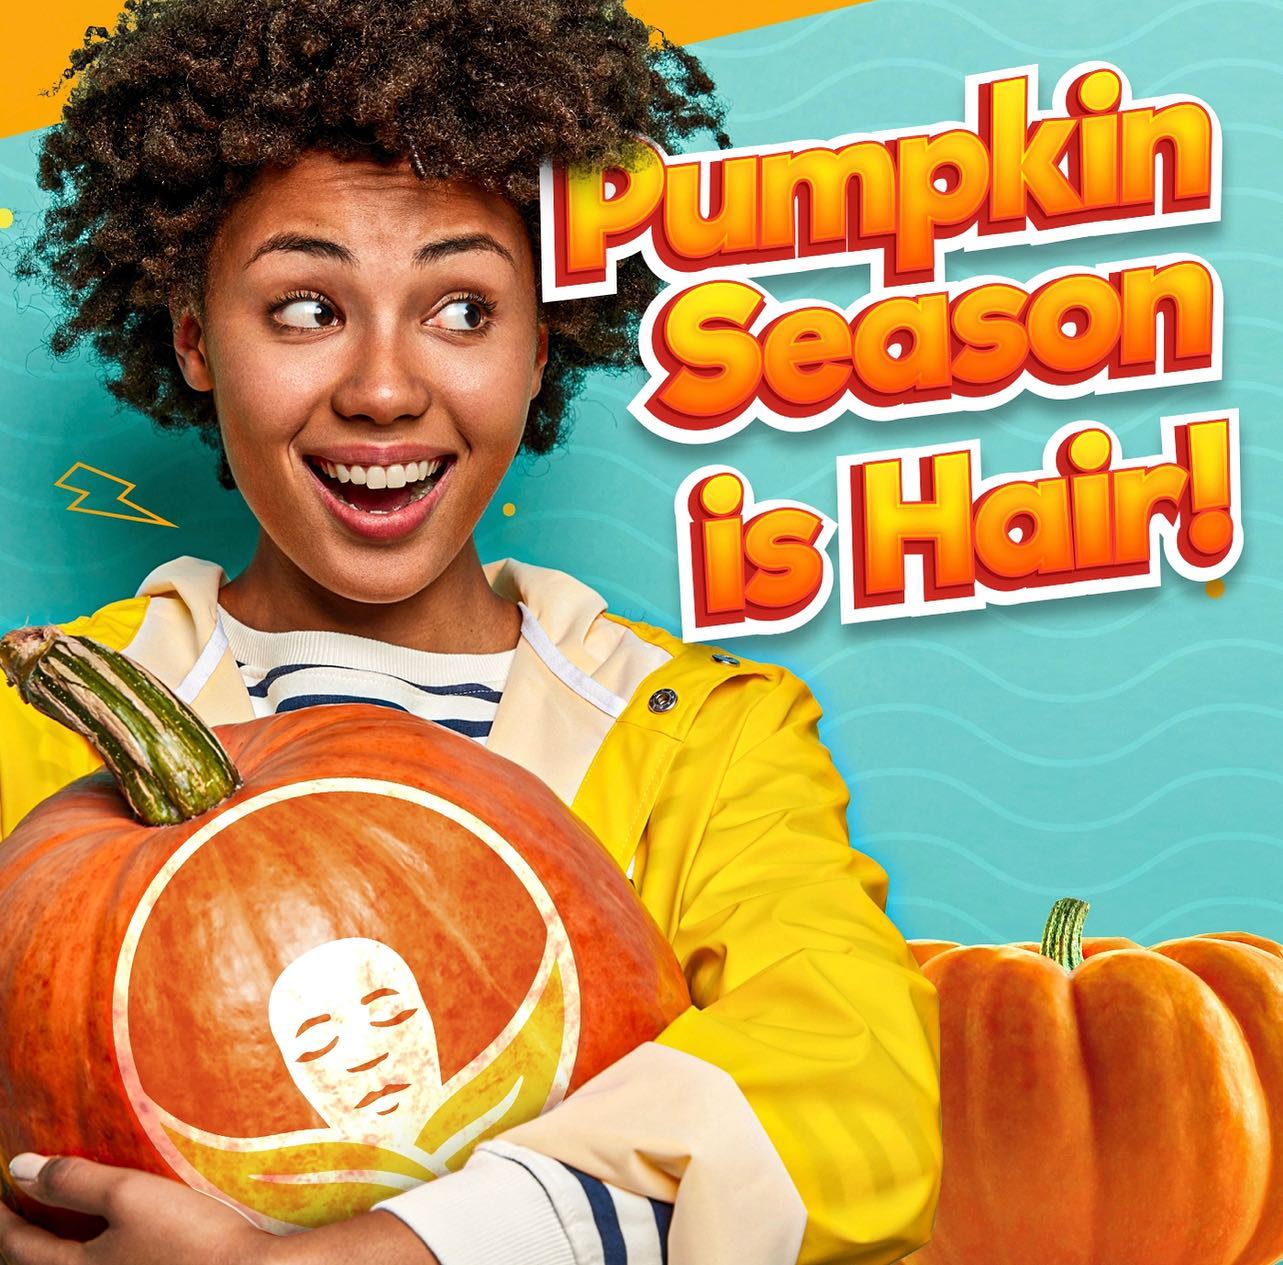 Pumpkin Season is Hair!